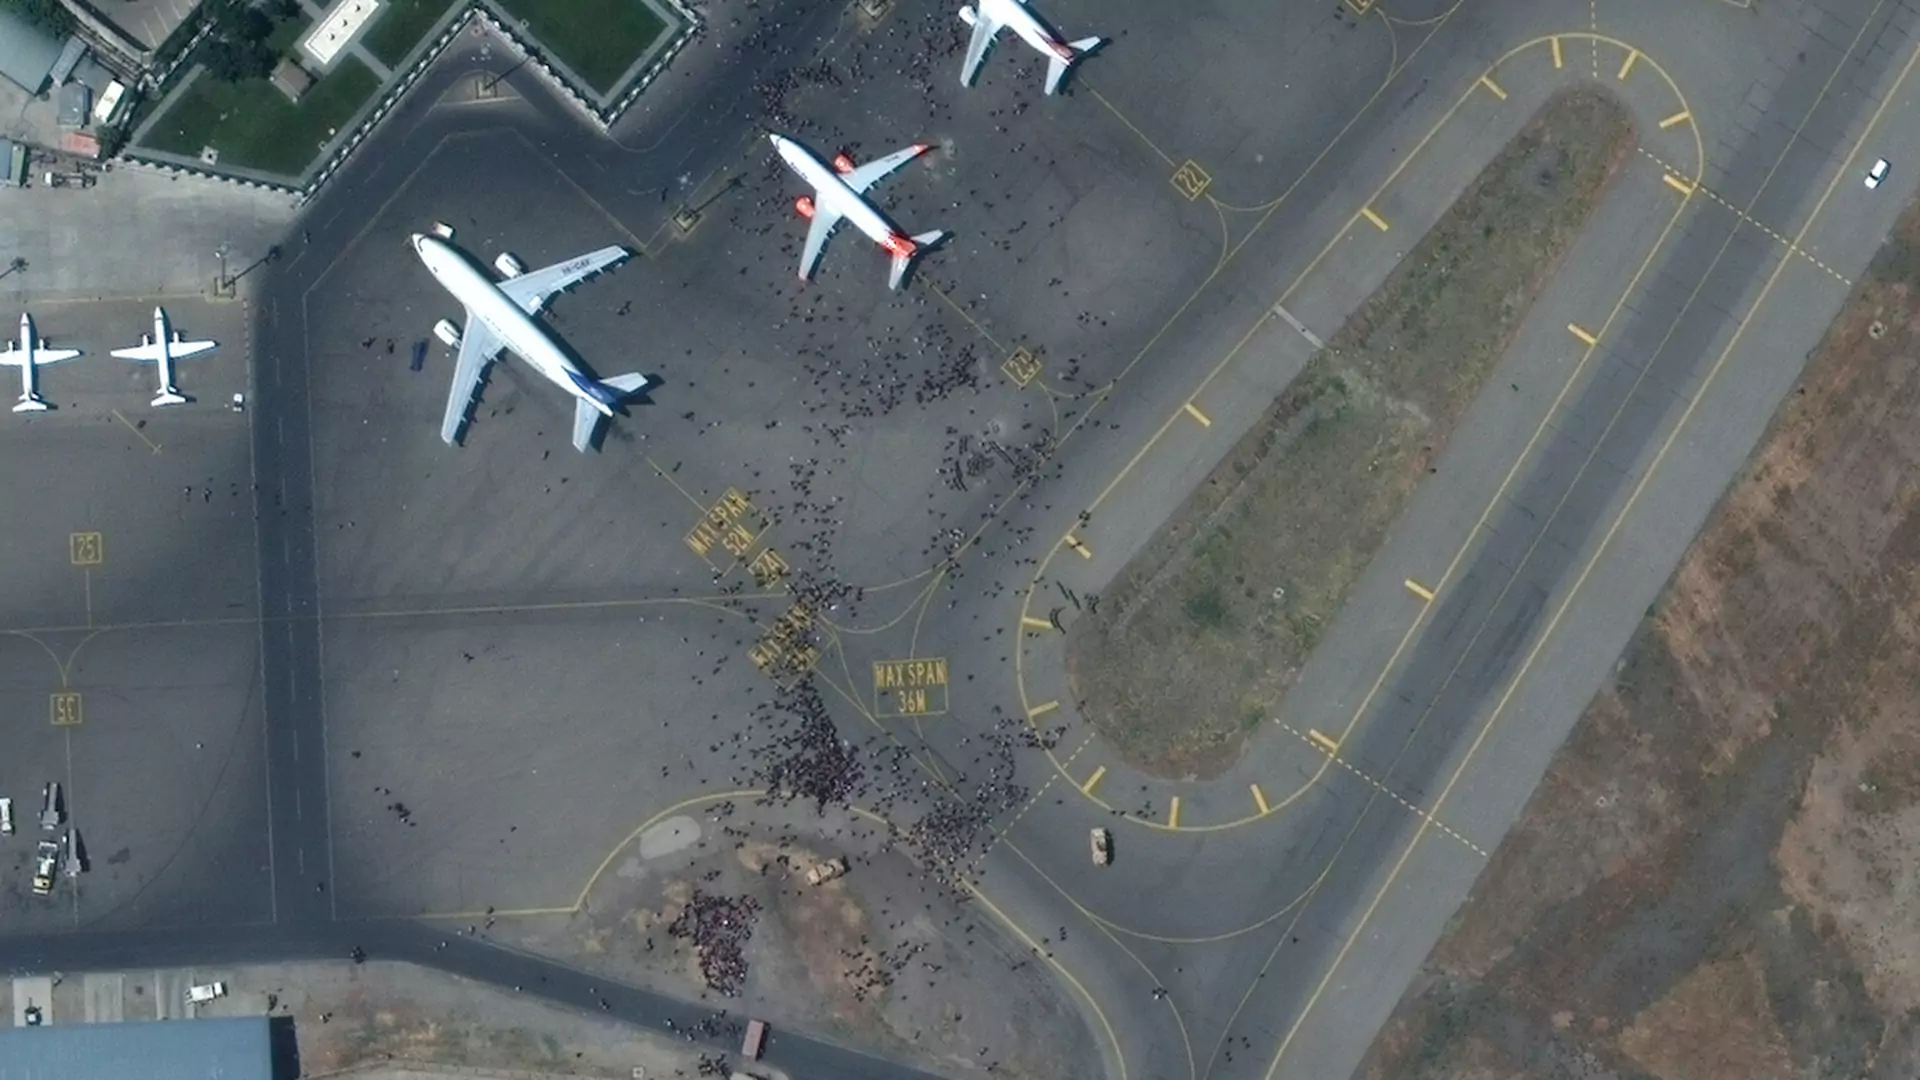 Te obrazki przejdą do historii. Chaos na lotnisku w Kabulu widać nawet na zdjęciach satelitarnych